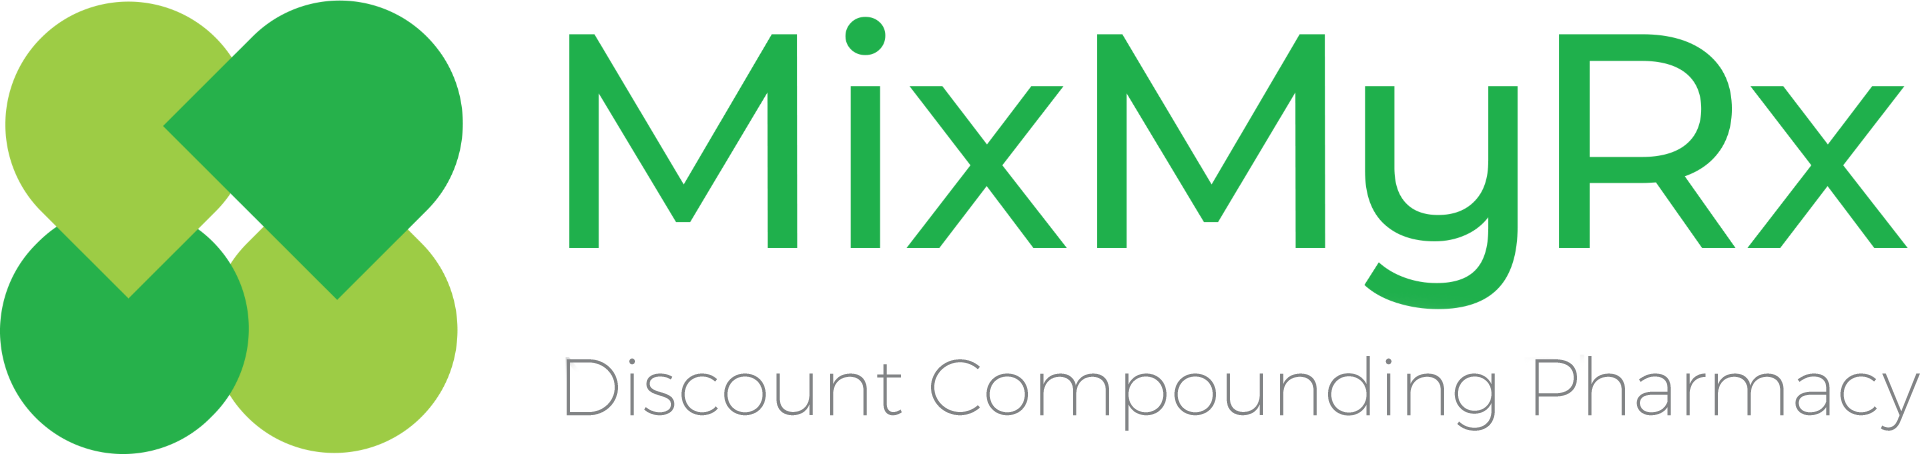 MixMyRx